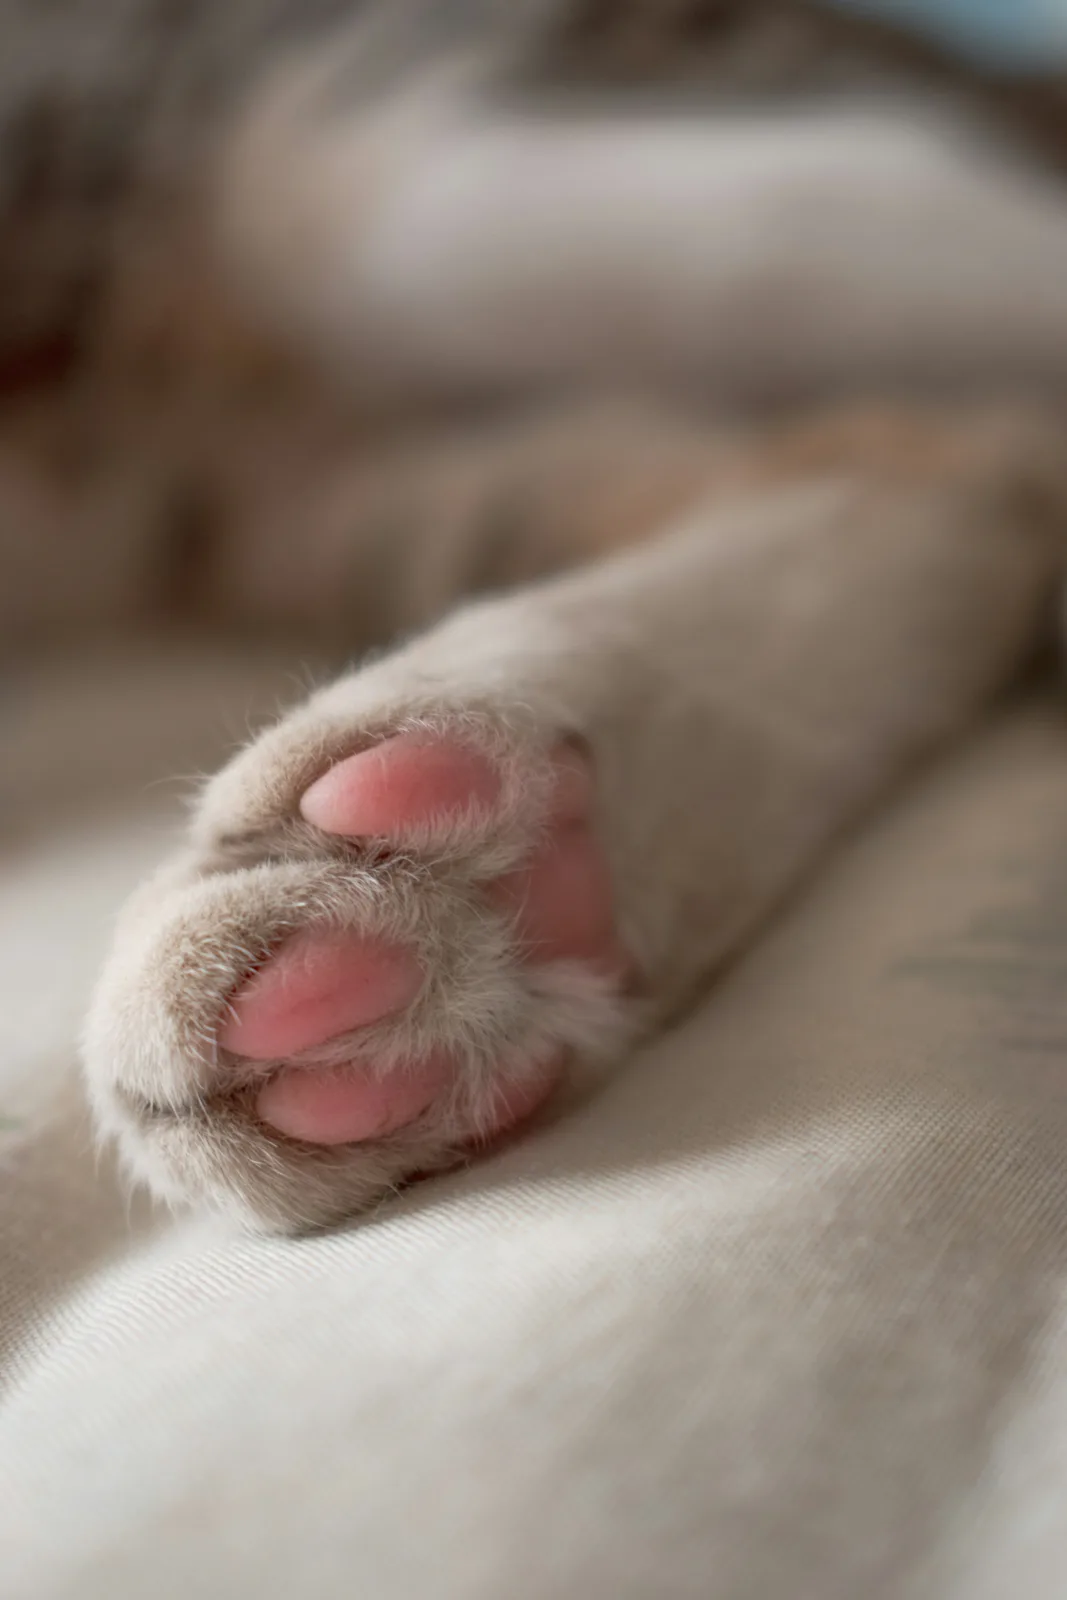 Anatomie von Katzenpfoten – Die Hinterpfote einer Katze in Nahaufnahme. Weiche lederartige Bohnen sind von cremefarbenem Fell umgeben.